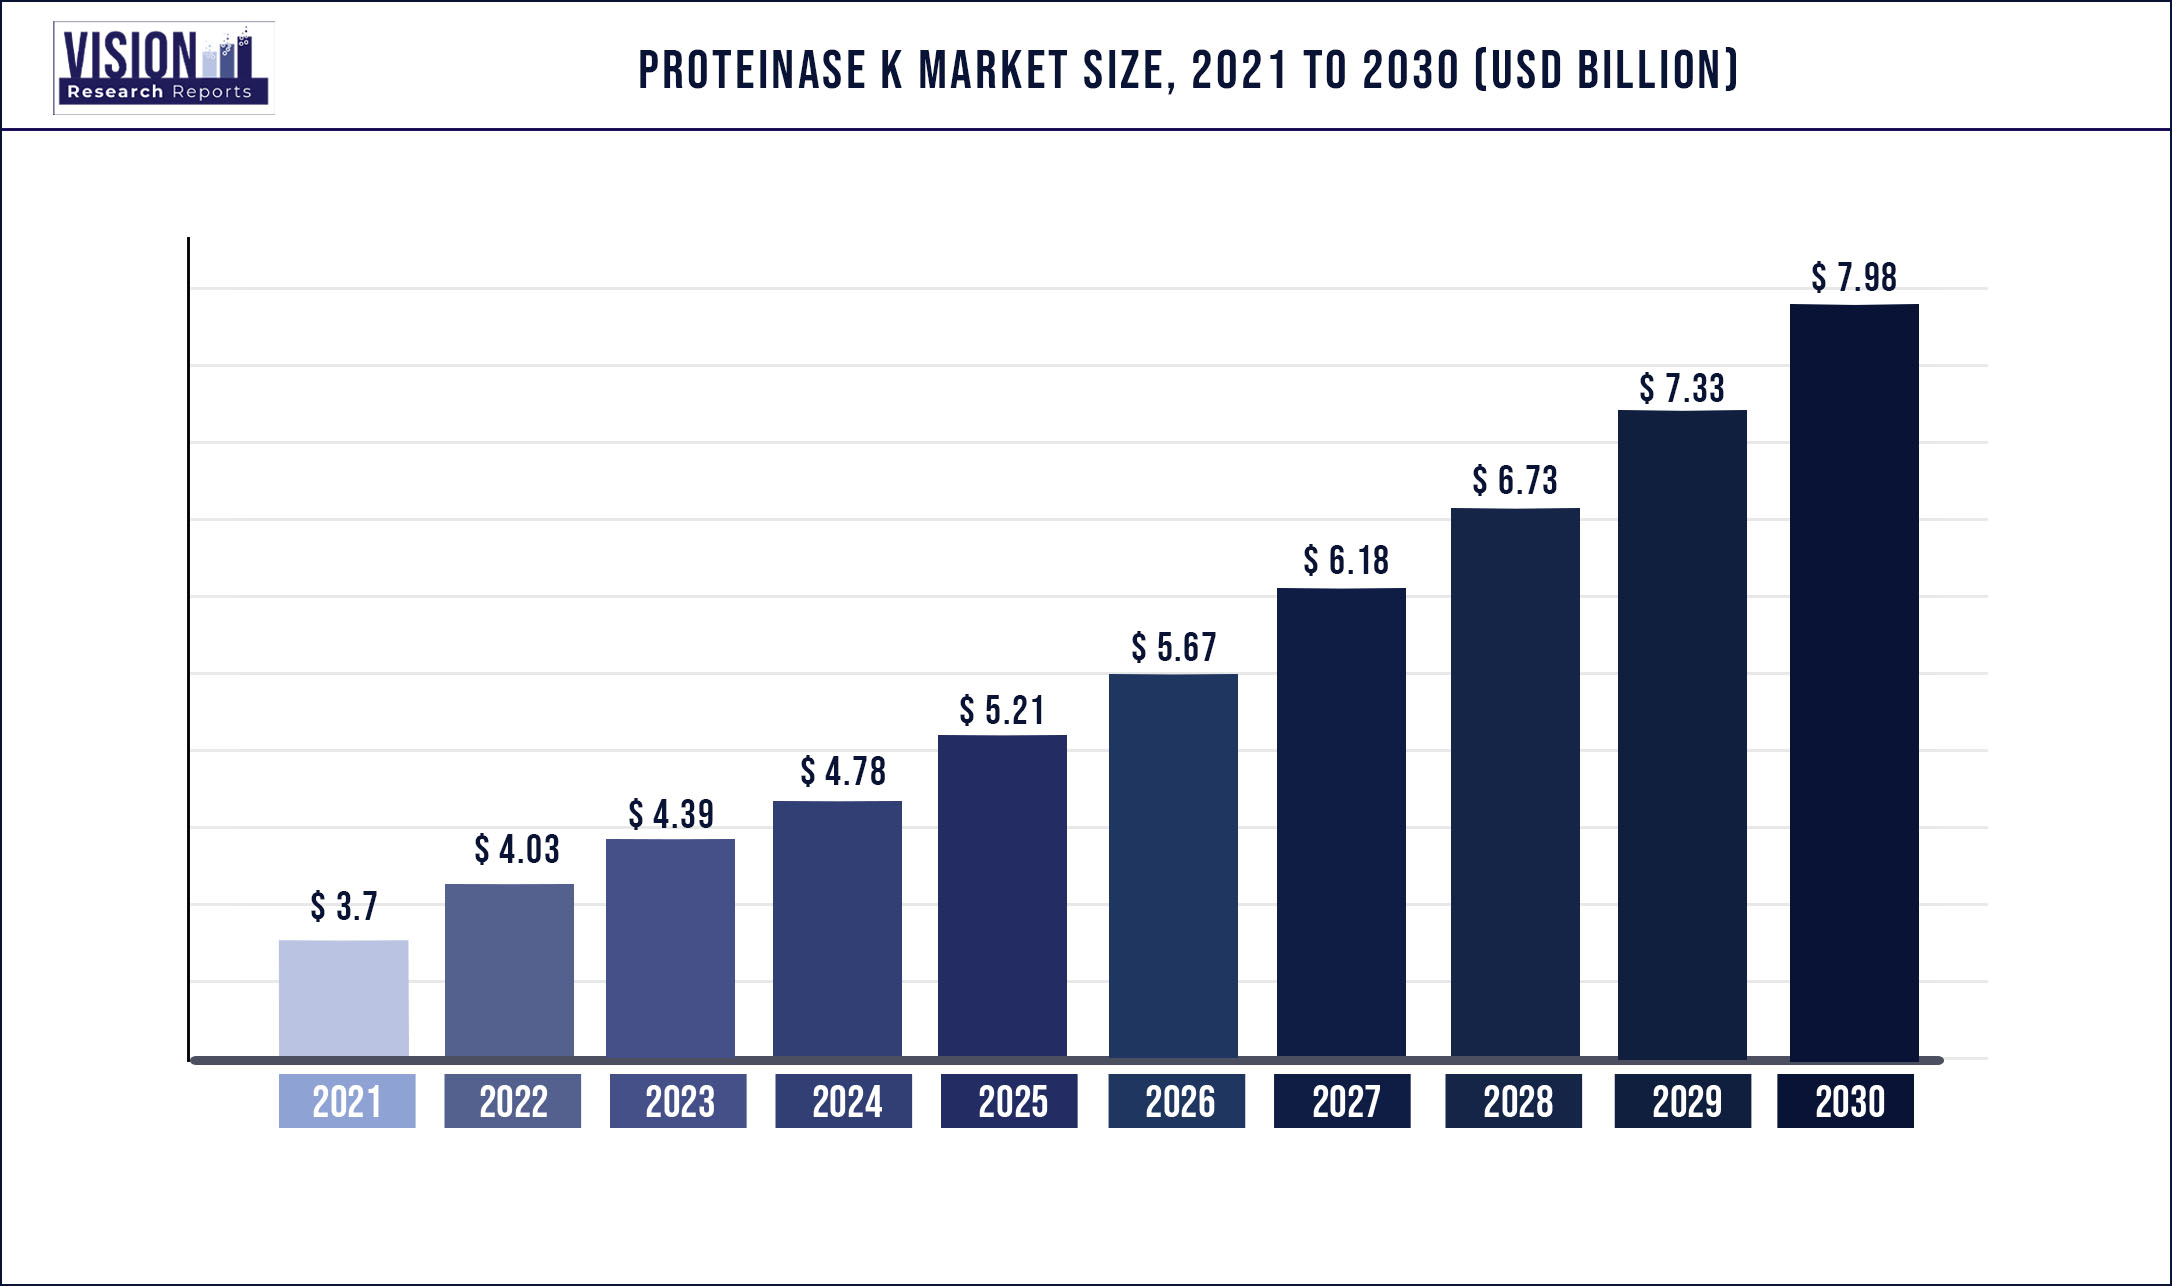 Proteinase K Market Size 2021 to 2030